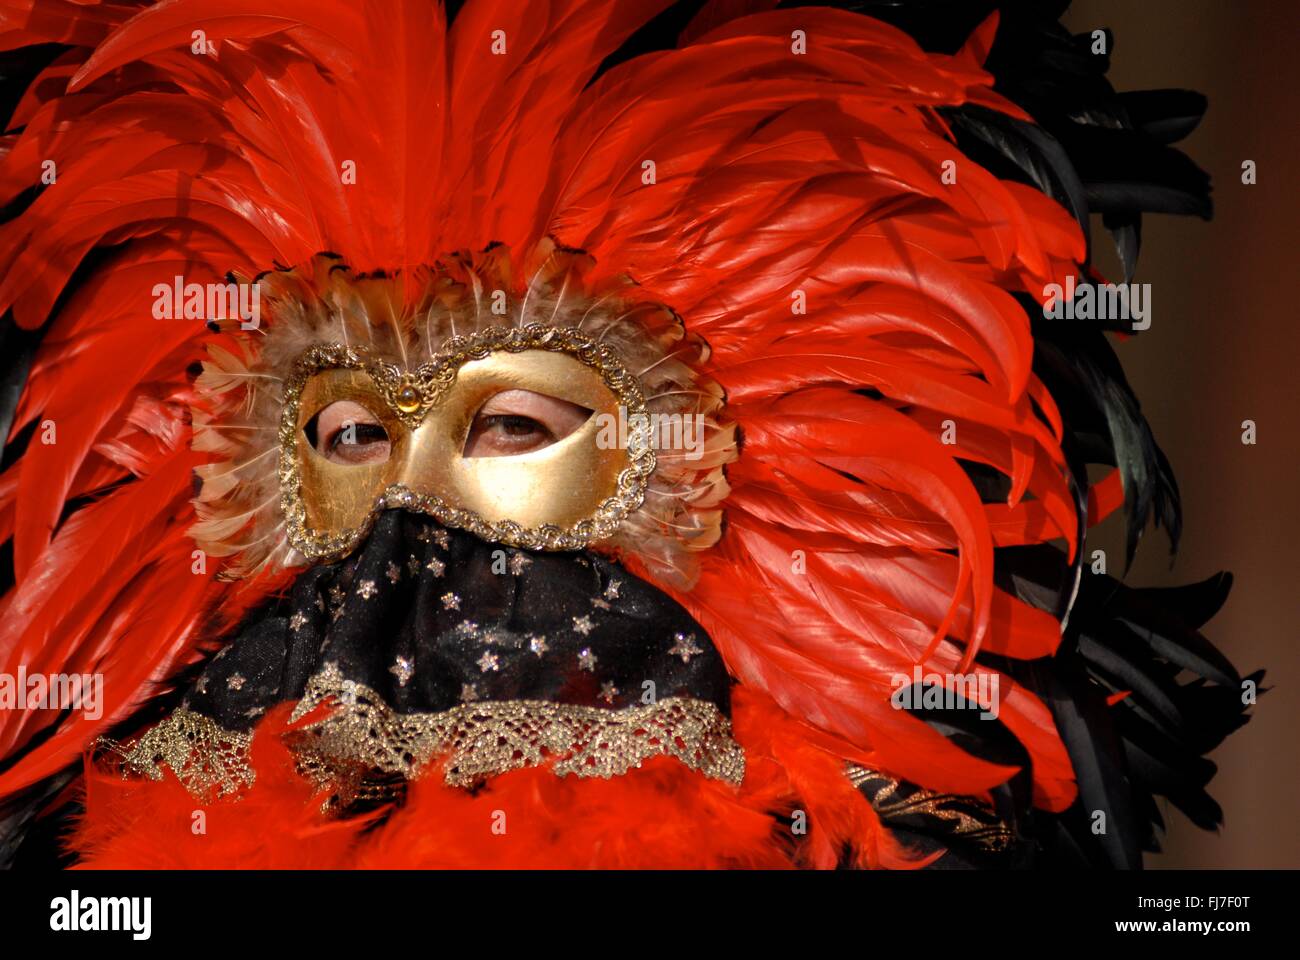 Eine Frau trägt eine aufwendige venezianische Maske und Kostüm während des jährlichen Karnevals von Venedig in Venedig, Italien. Karneval läuft offiziell für 10 Tage auf die christliche Feier der Fastenzeit endet. Stockfoto